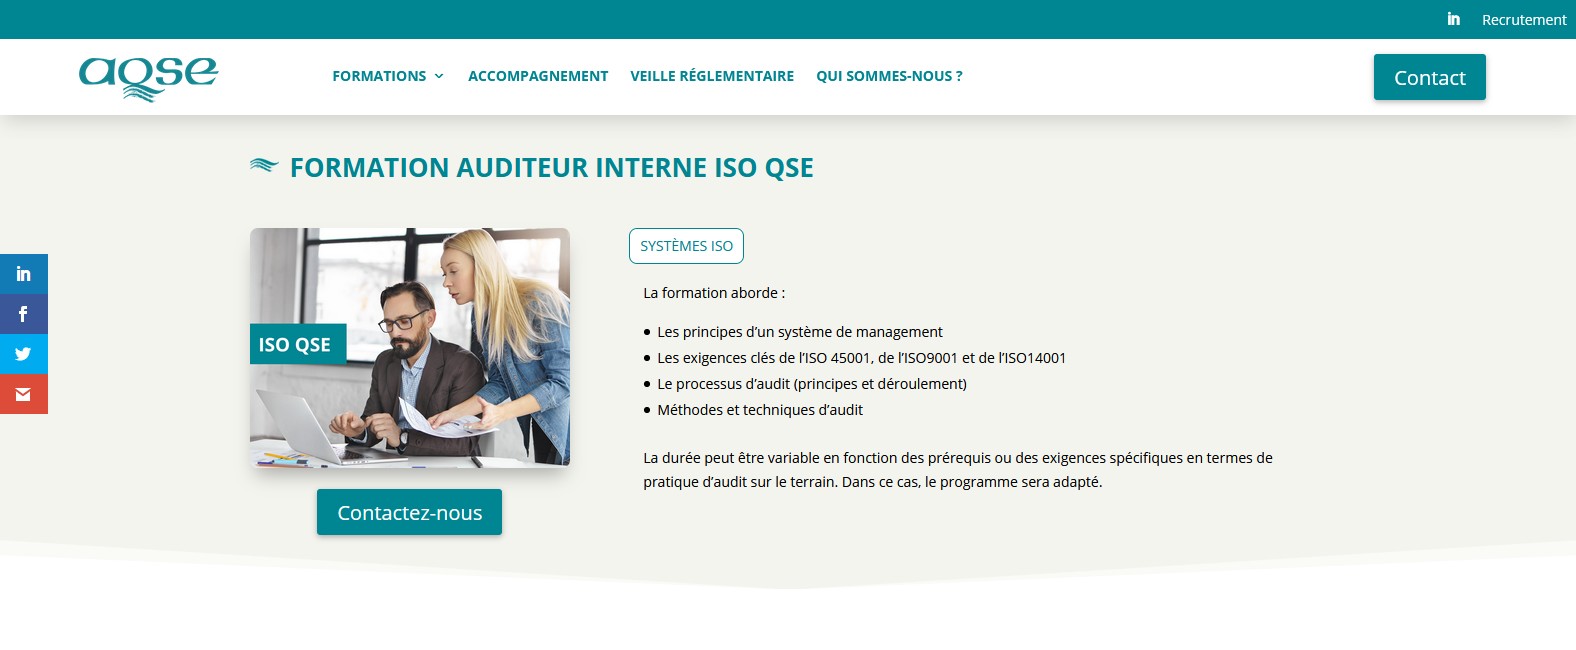 AQSE-france.fr Formation auditeur interne scurit